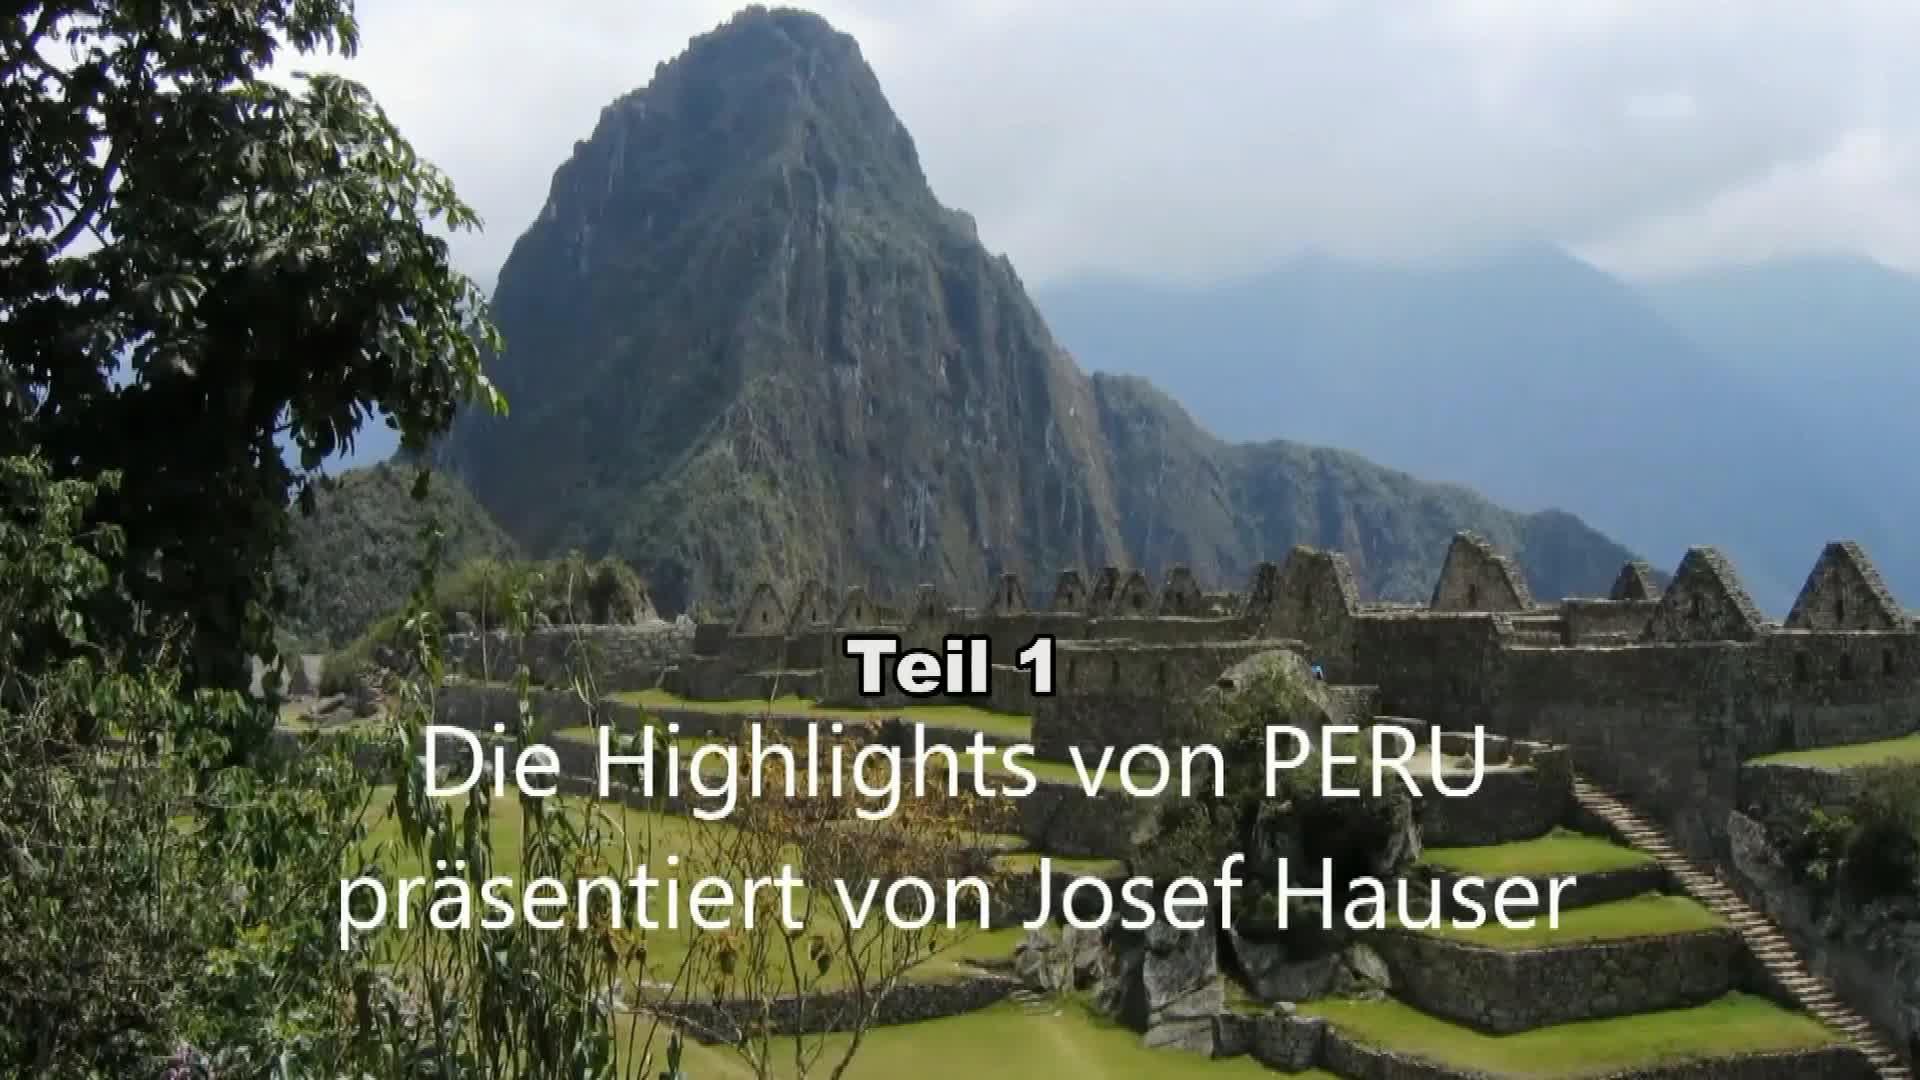 Die Highlights von Peru 1